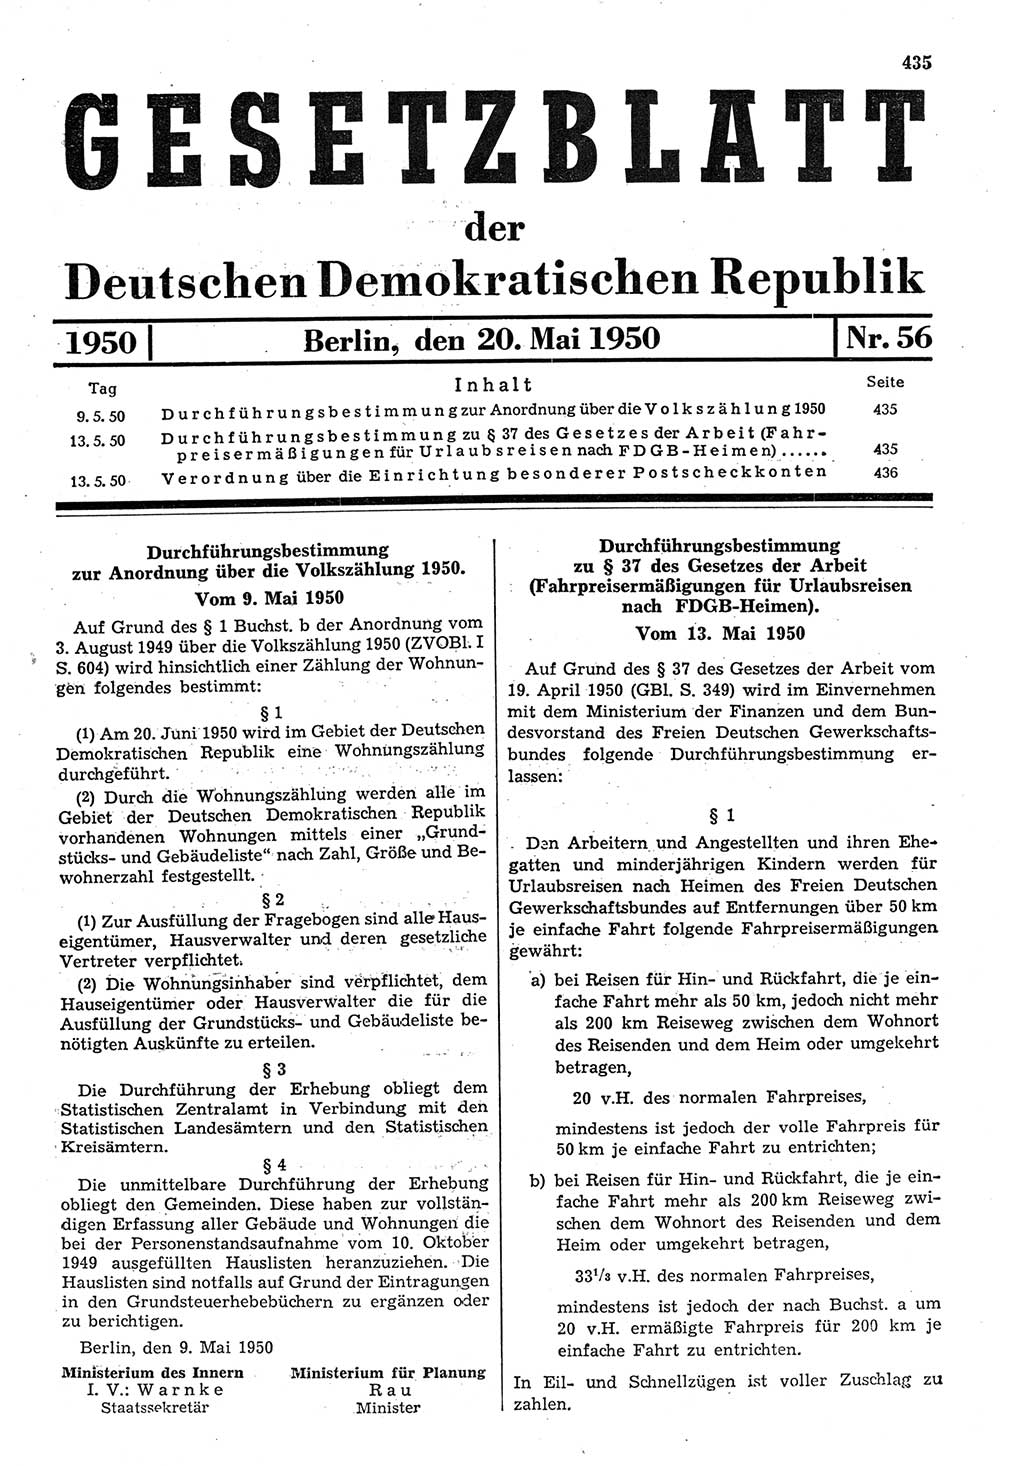 Gesetzblatt (GBl.) der Deutschen Demokratischen Republik (DDR) 1950, Seite 435 (GBl. DDR 1950, S. 435)